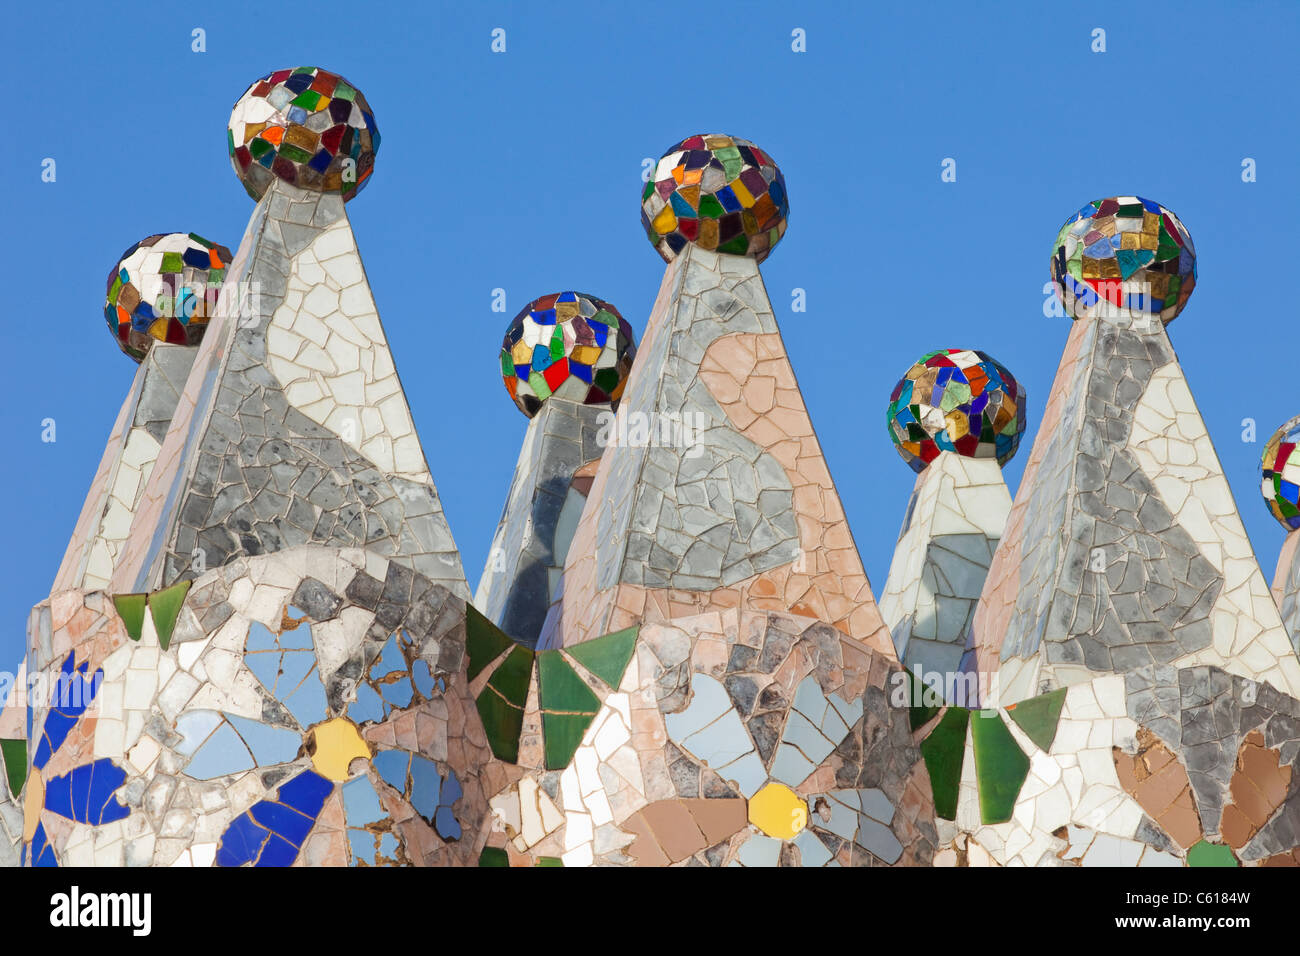 Spain, Barcelona, Casa Batllo, The Rooftop Chimneys Stock Photo